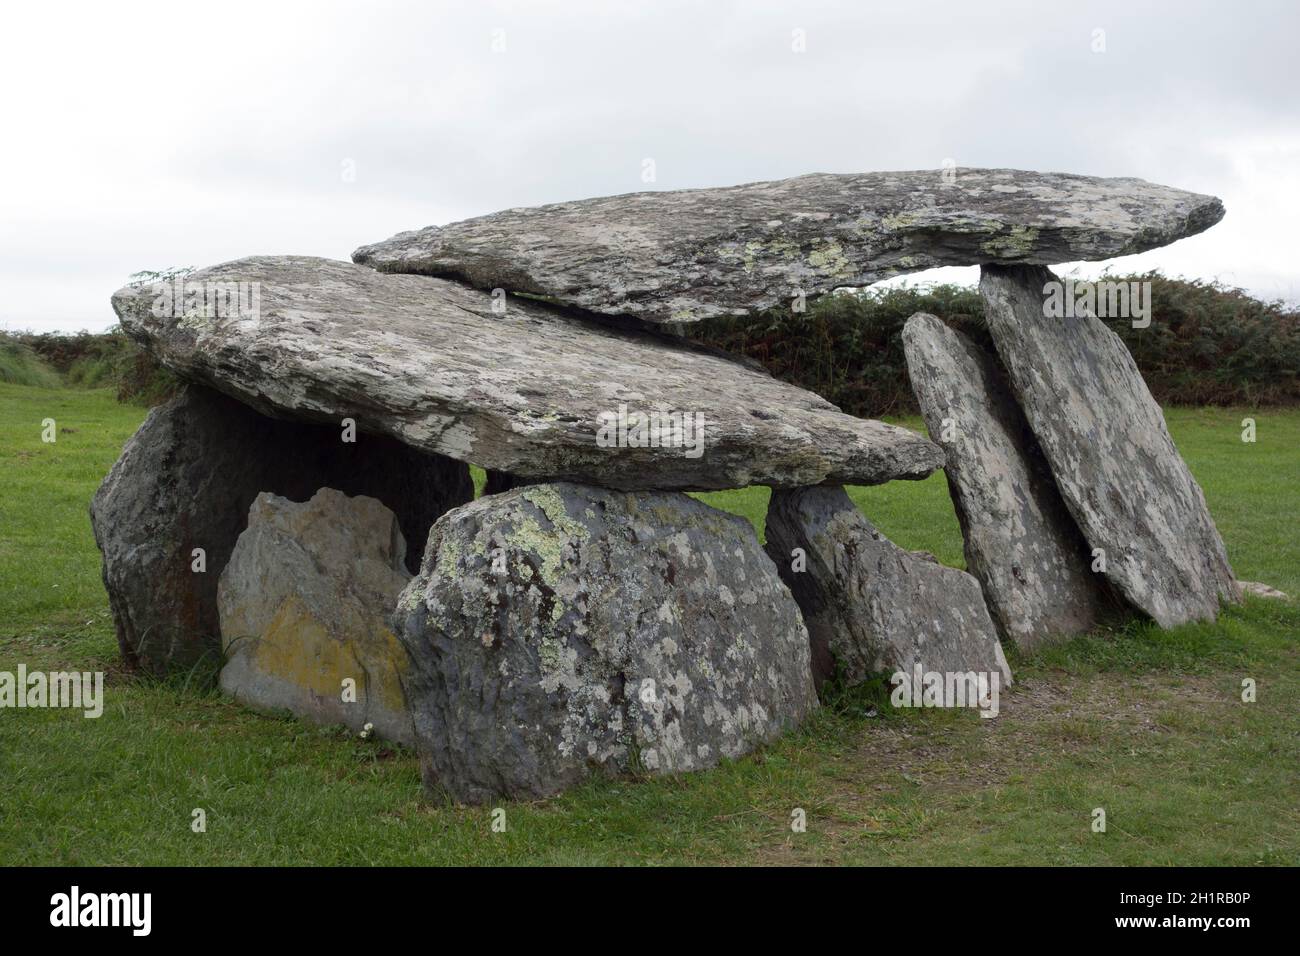 keltische Kultur und Kulturerbe mit historischen Relikten in Irland  Stockfotografie - Alamy